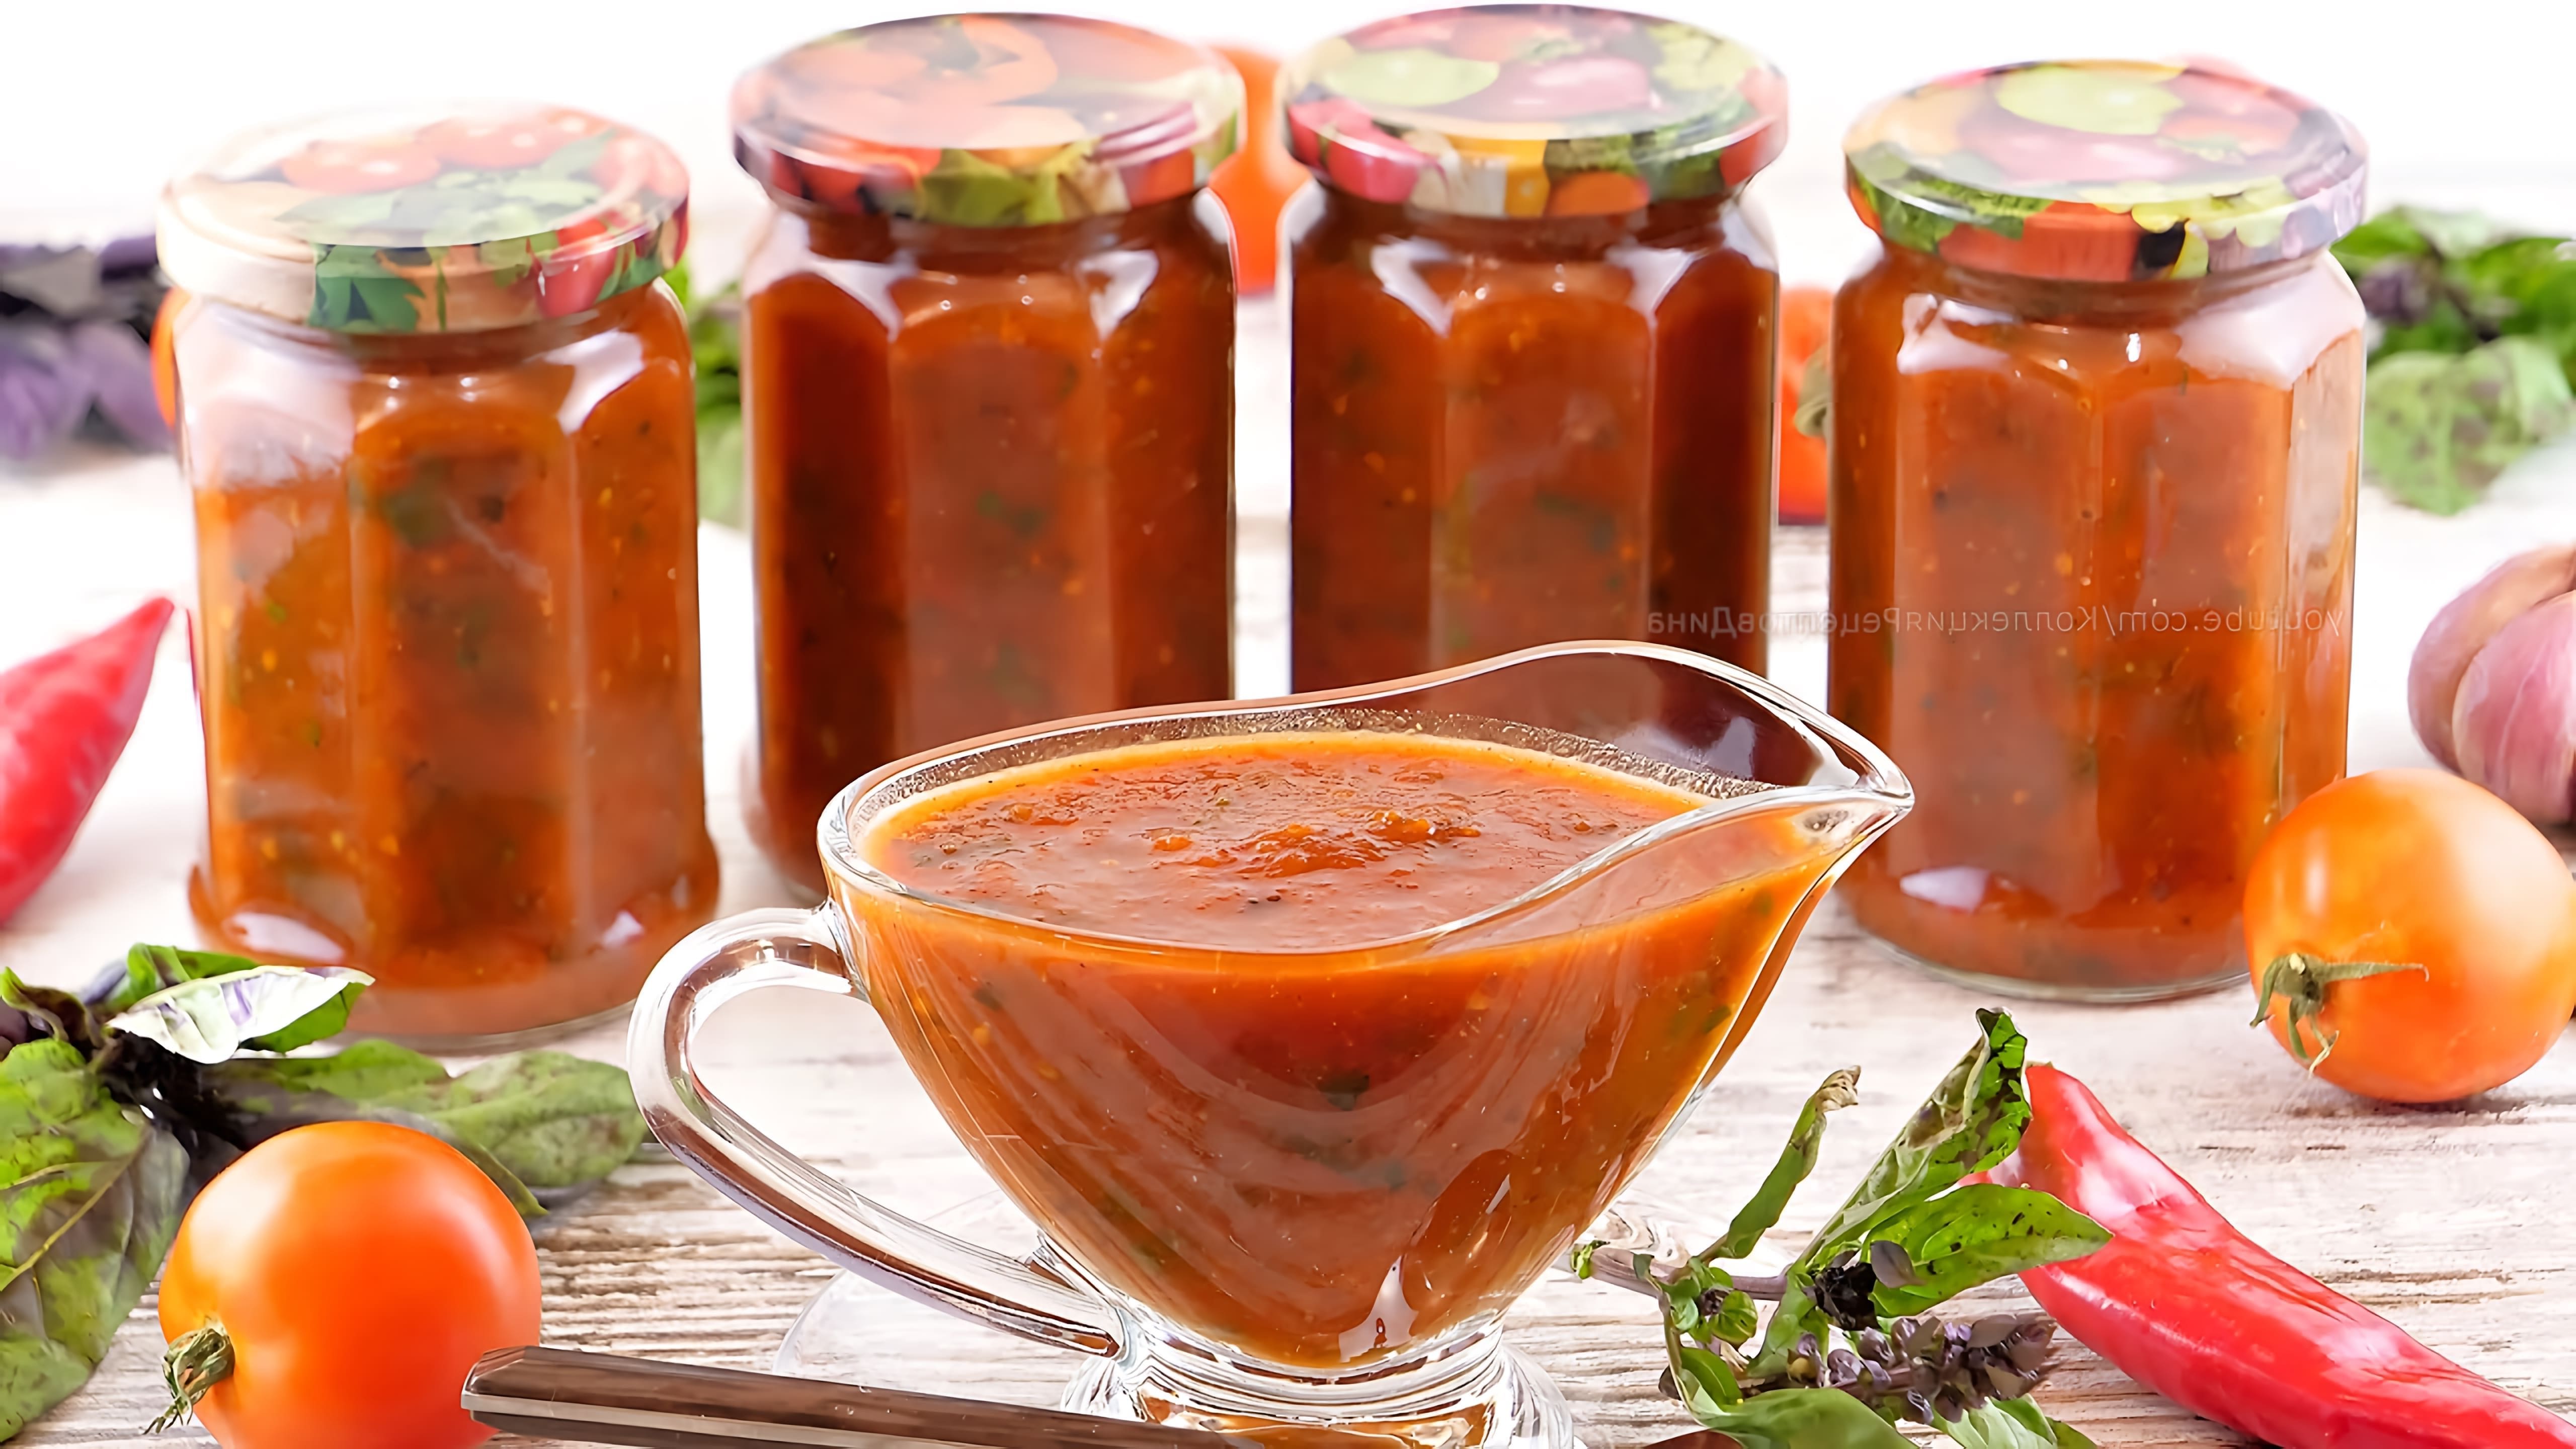 В этом видео демонстрируется процесс приготовления пряного томатного соуса с базиликом и острым перцем